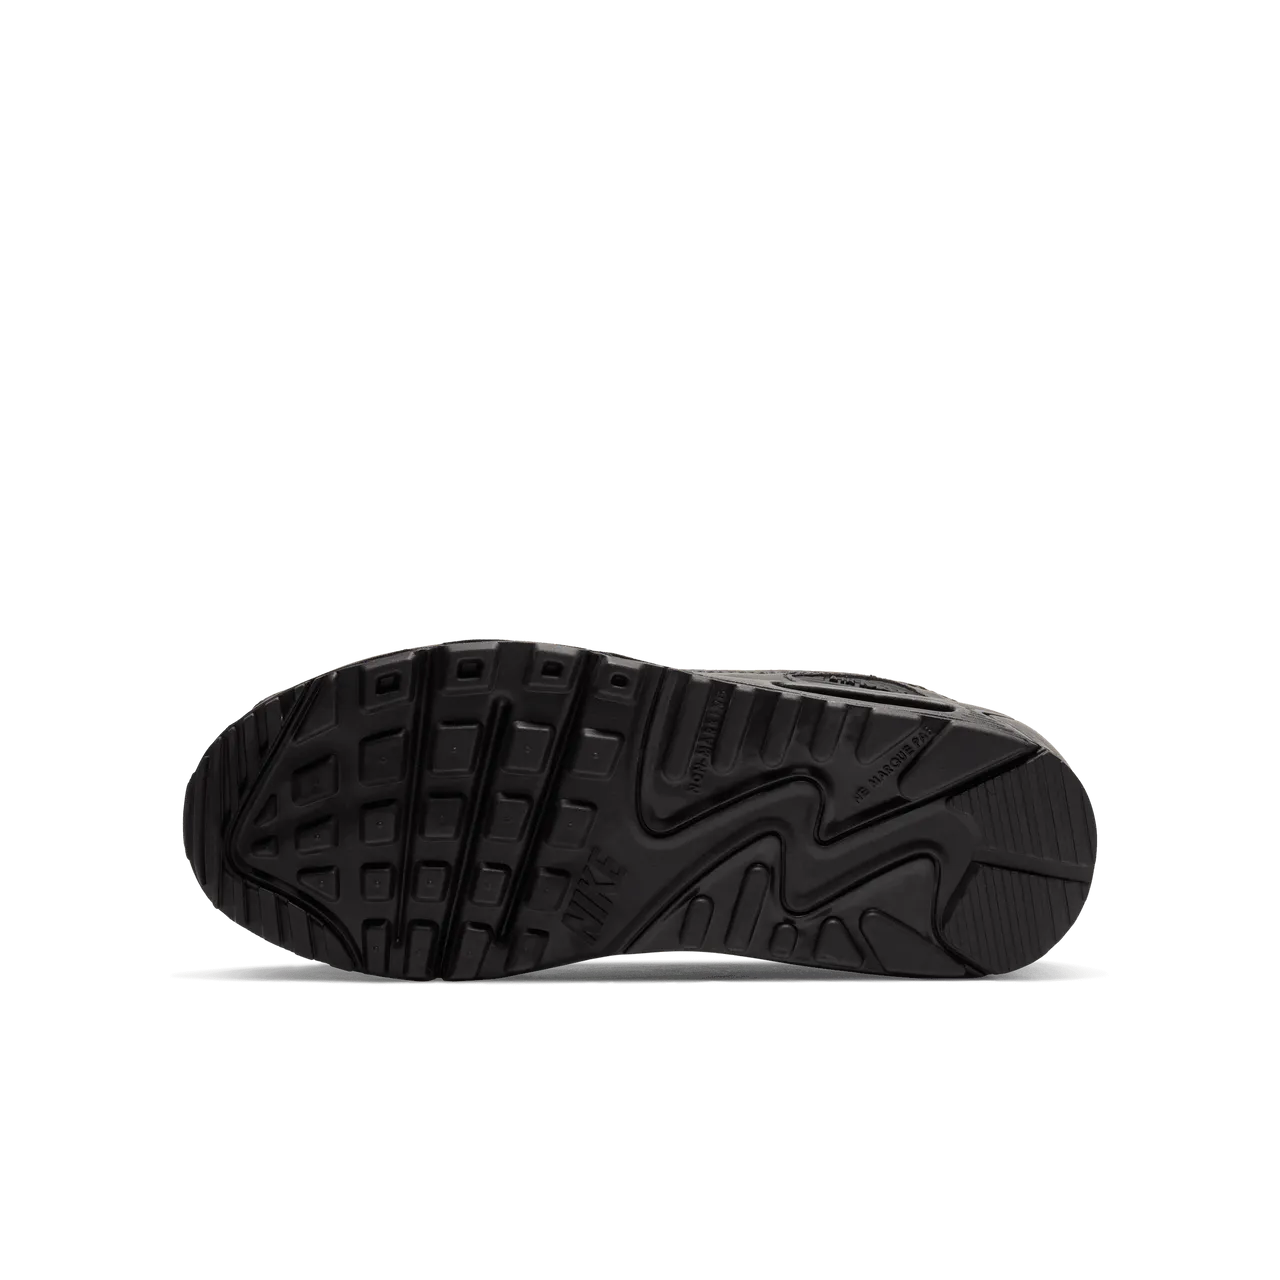 Nike Air Max 90 LTR Older Kids' Shoes - Black